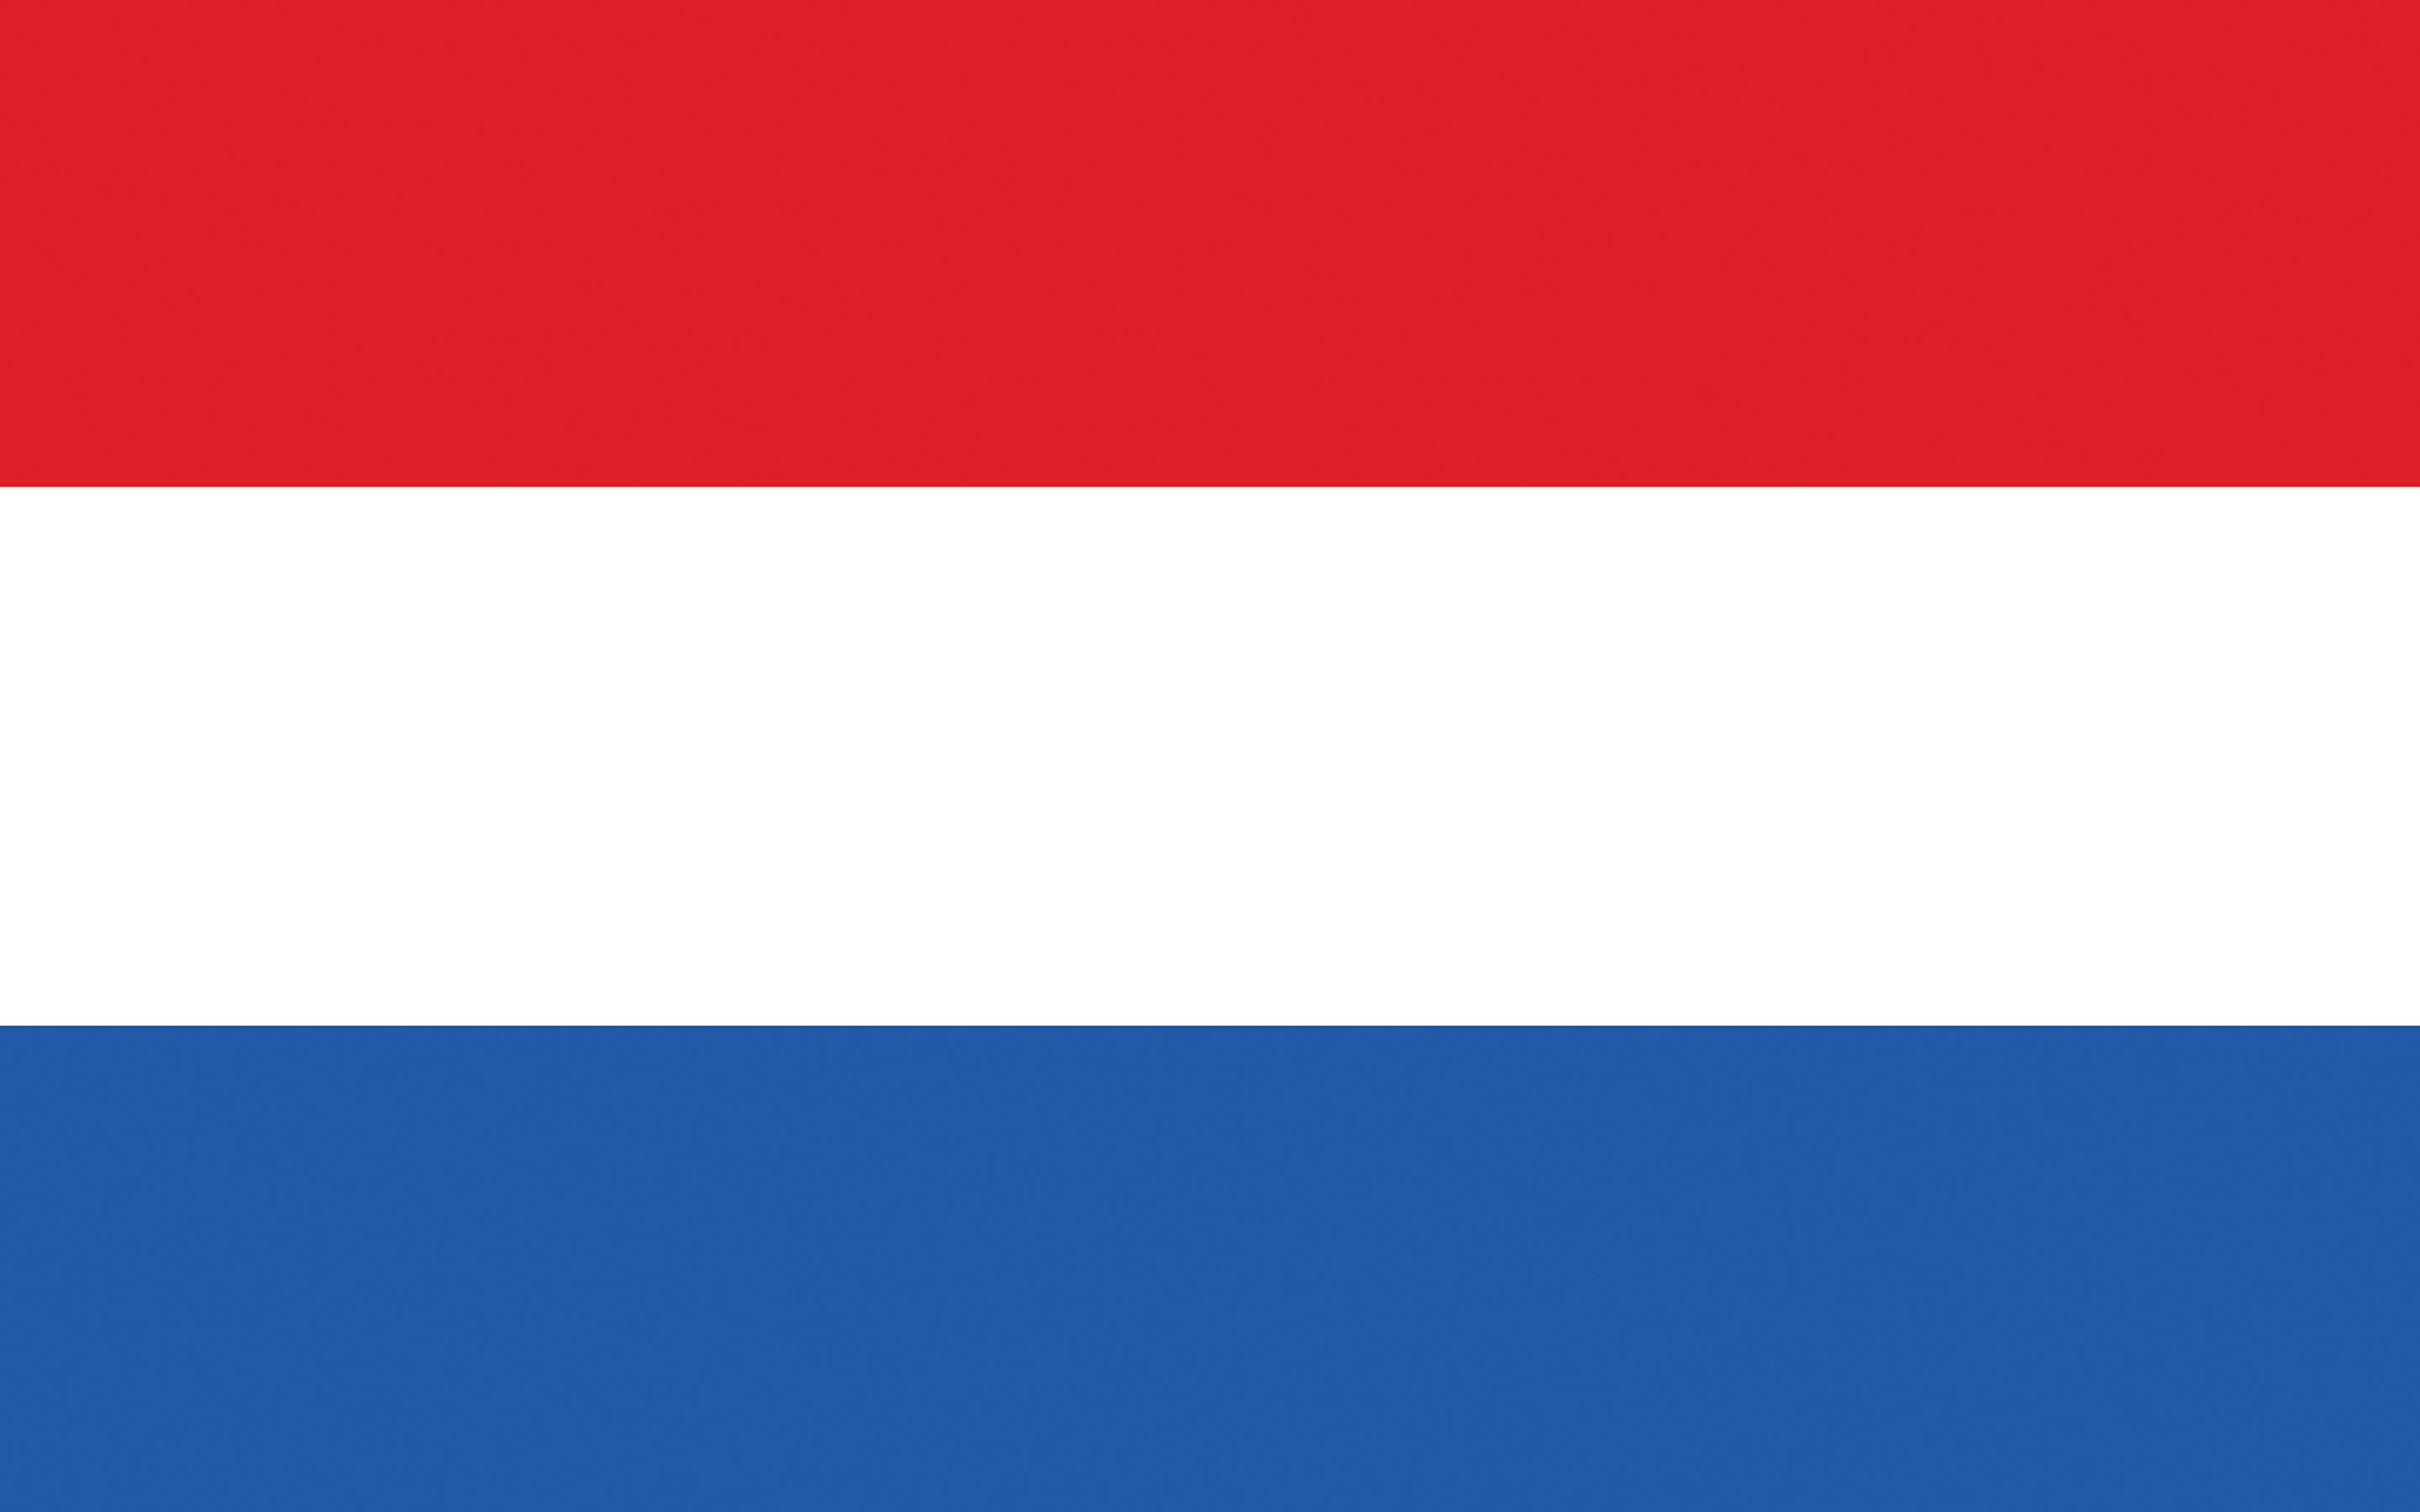 Image Netherlands Flag Stripes 2880x1800